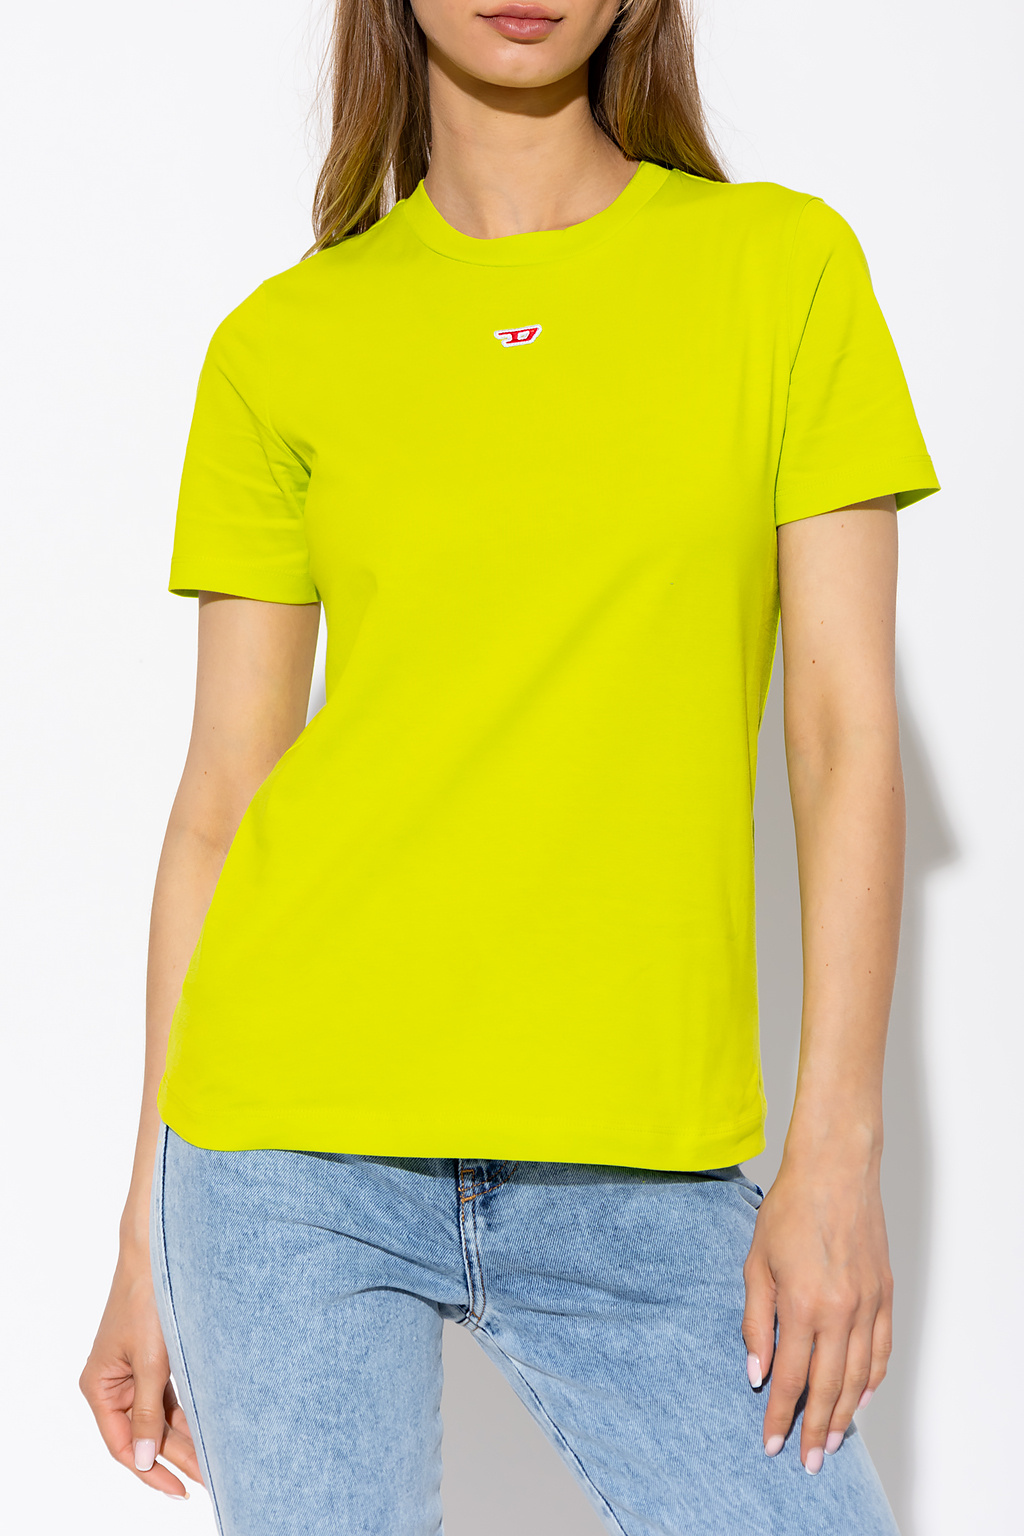 Neon 'T-REG-D' T-shirt Diesel - Vitkac GB